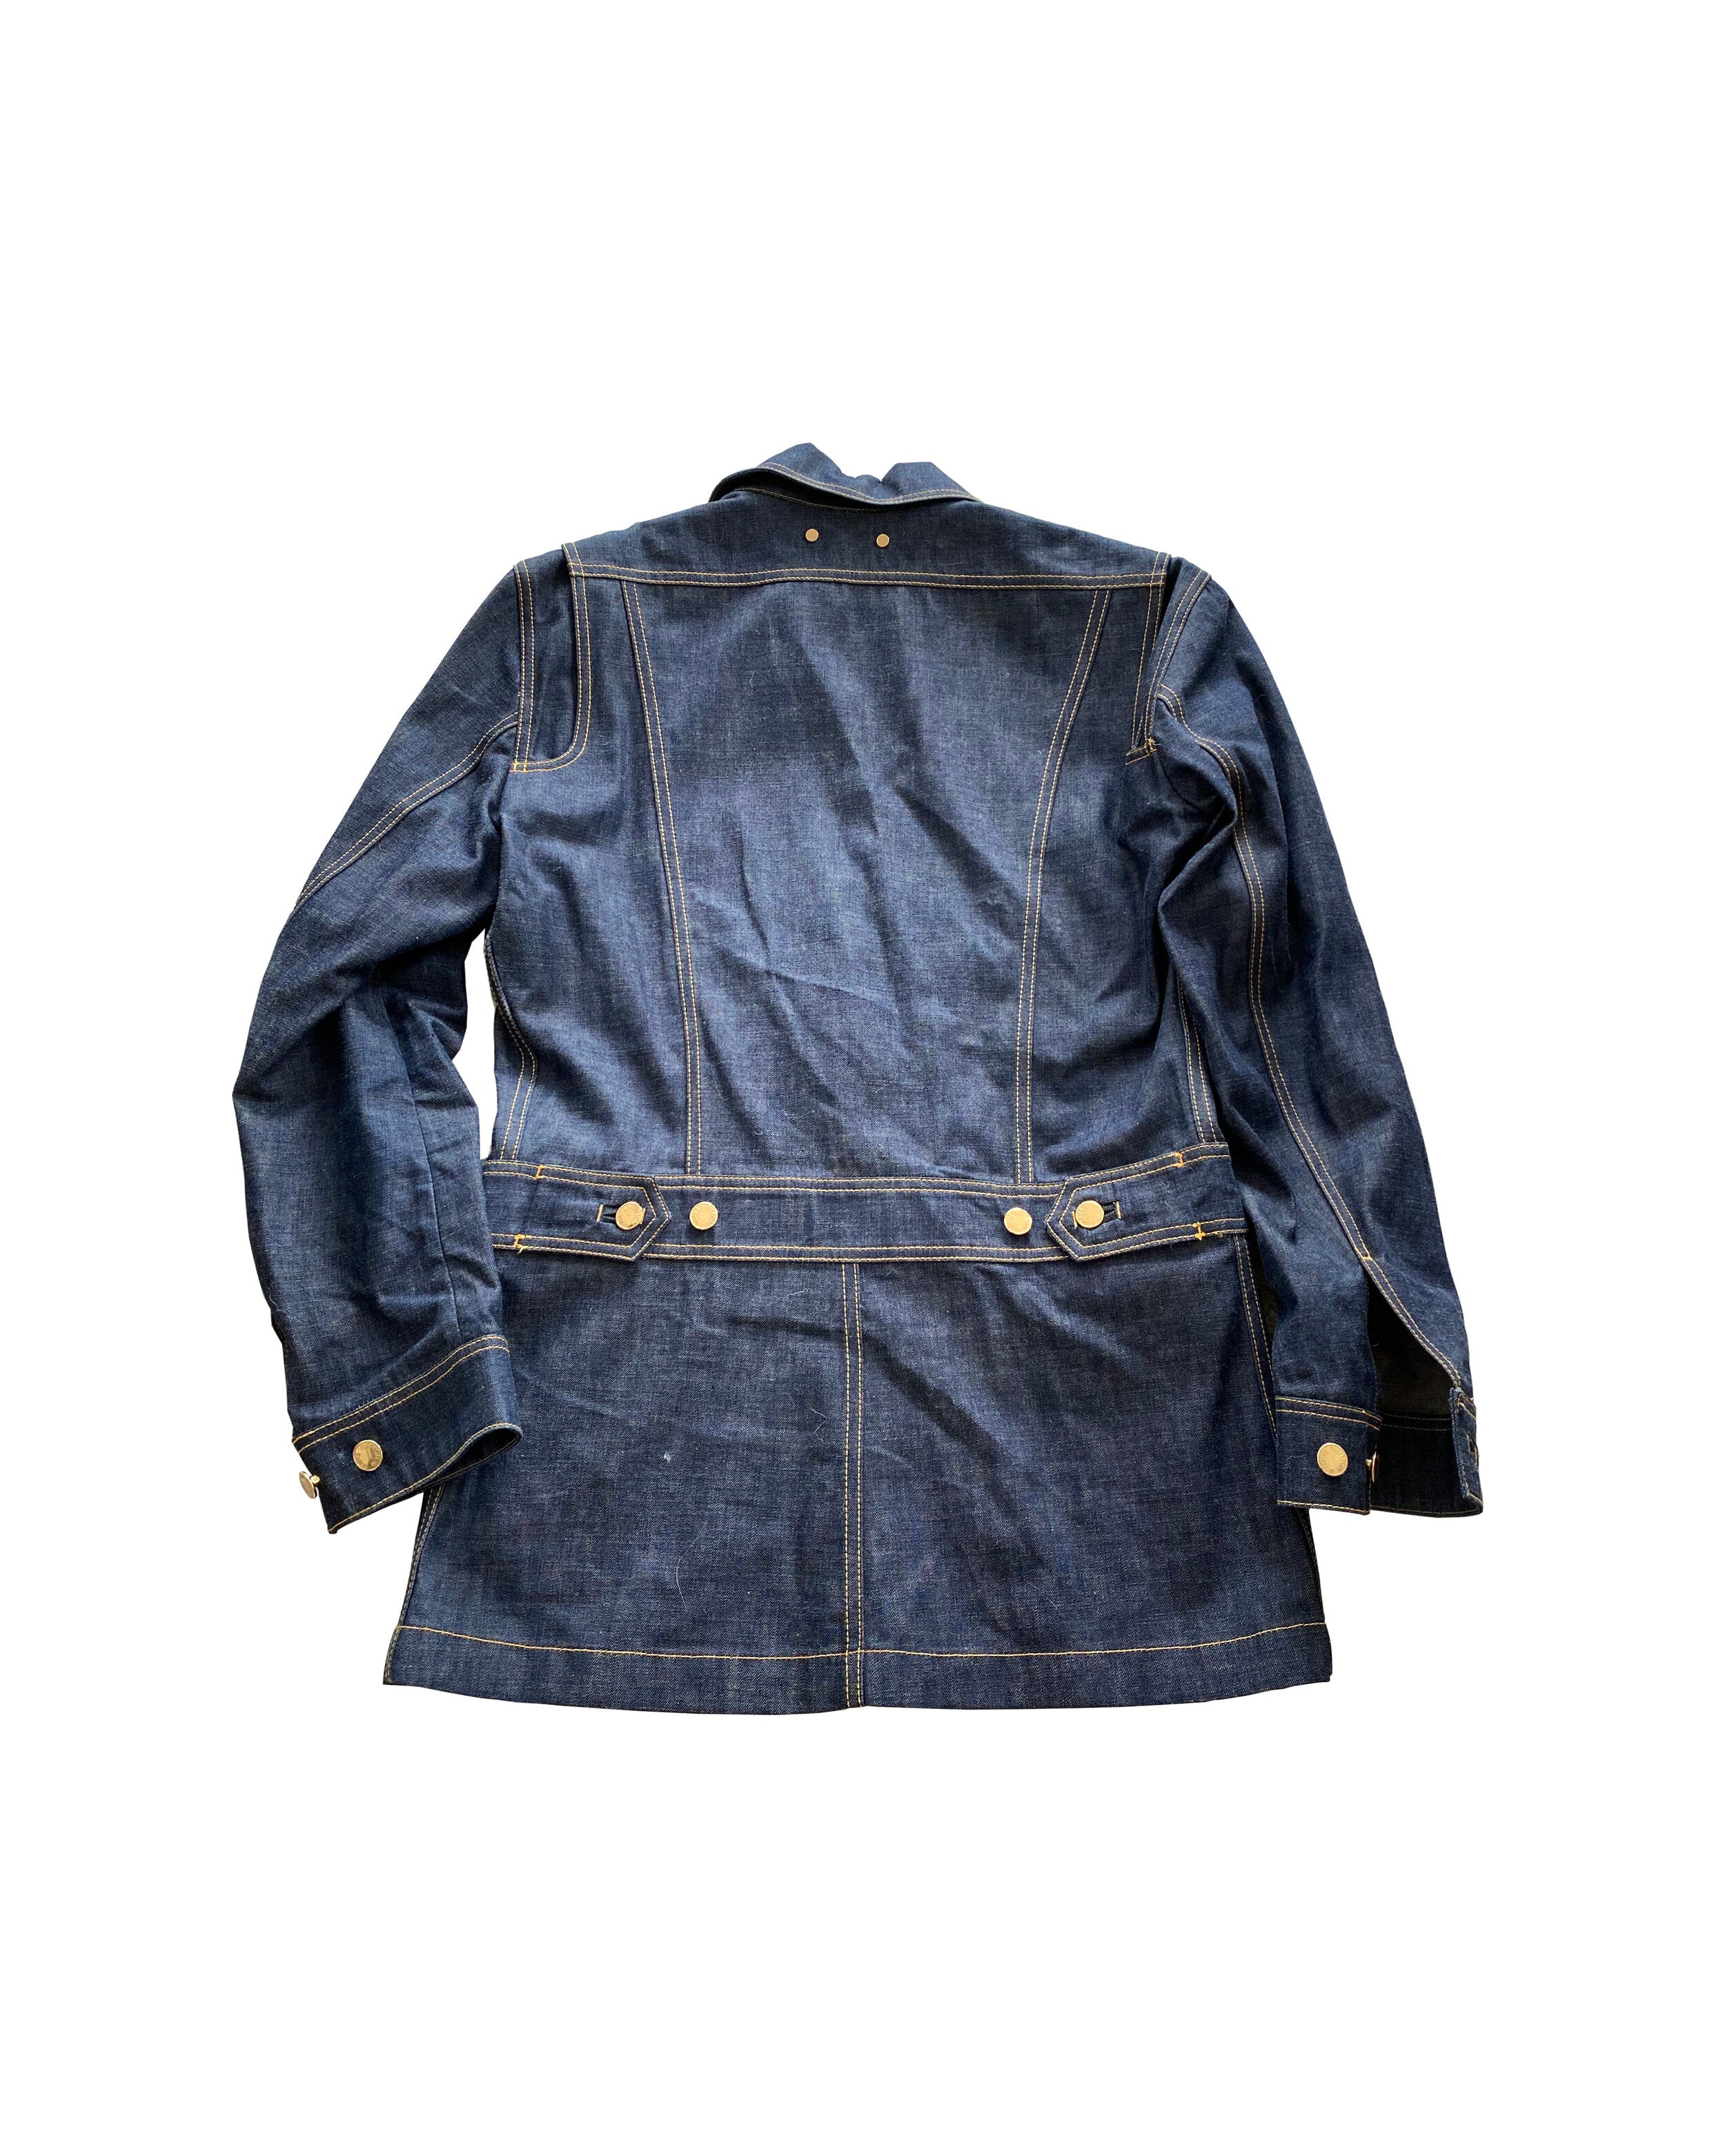 Louis Vuitton Vintage 2000's Biker Jacket